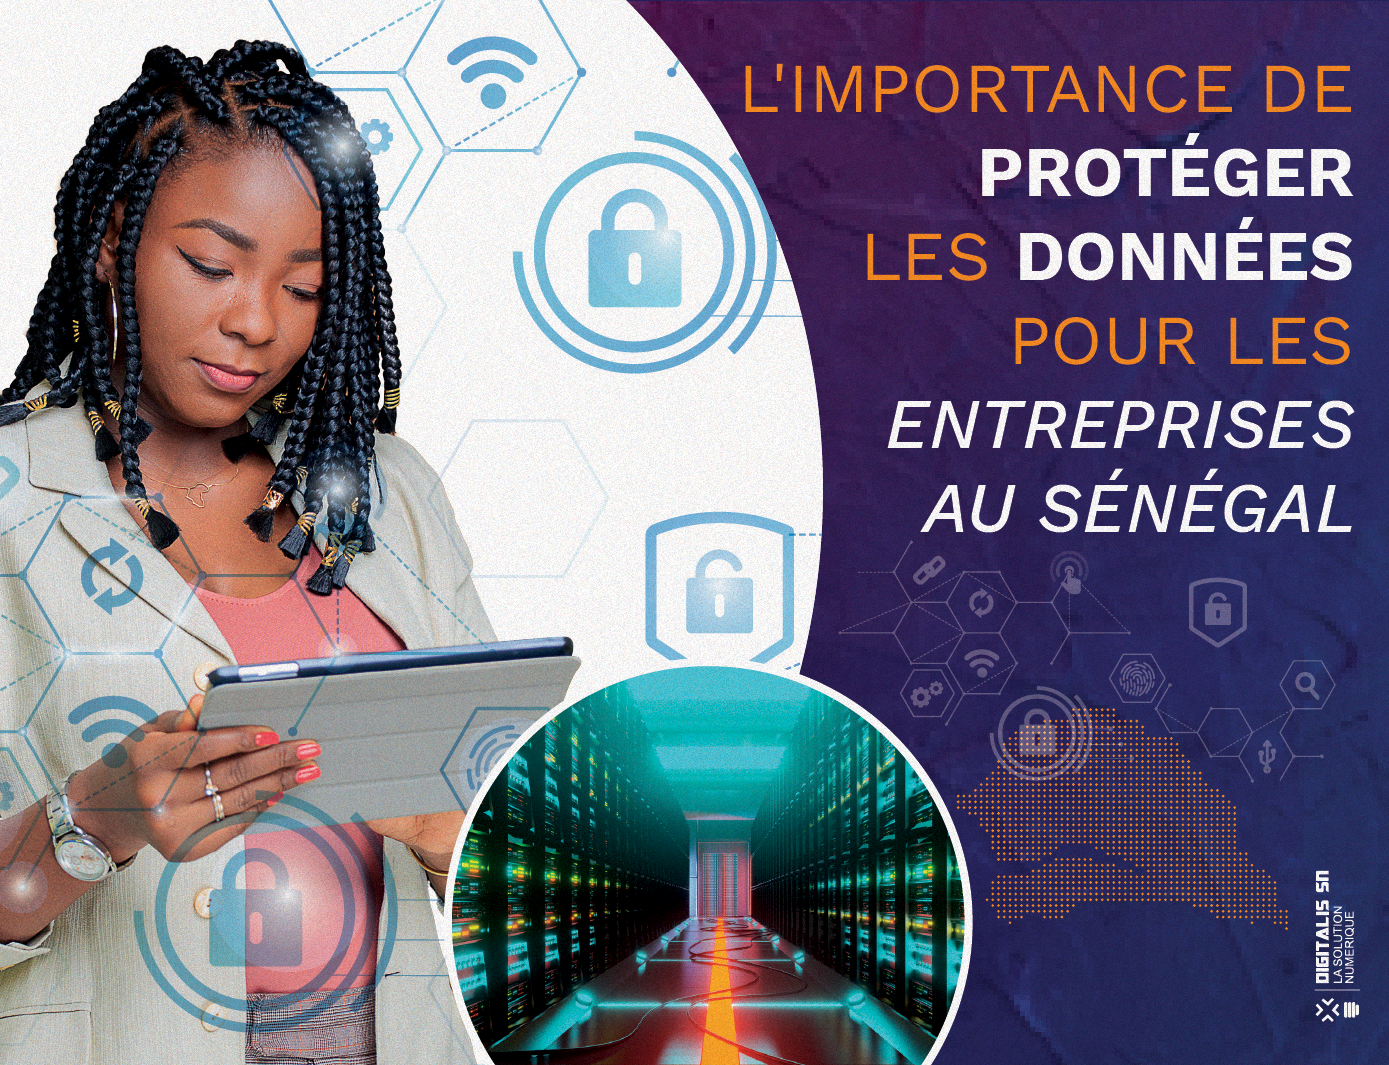 L’importance de protéger les données pour les entreprises au Sénégal 